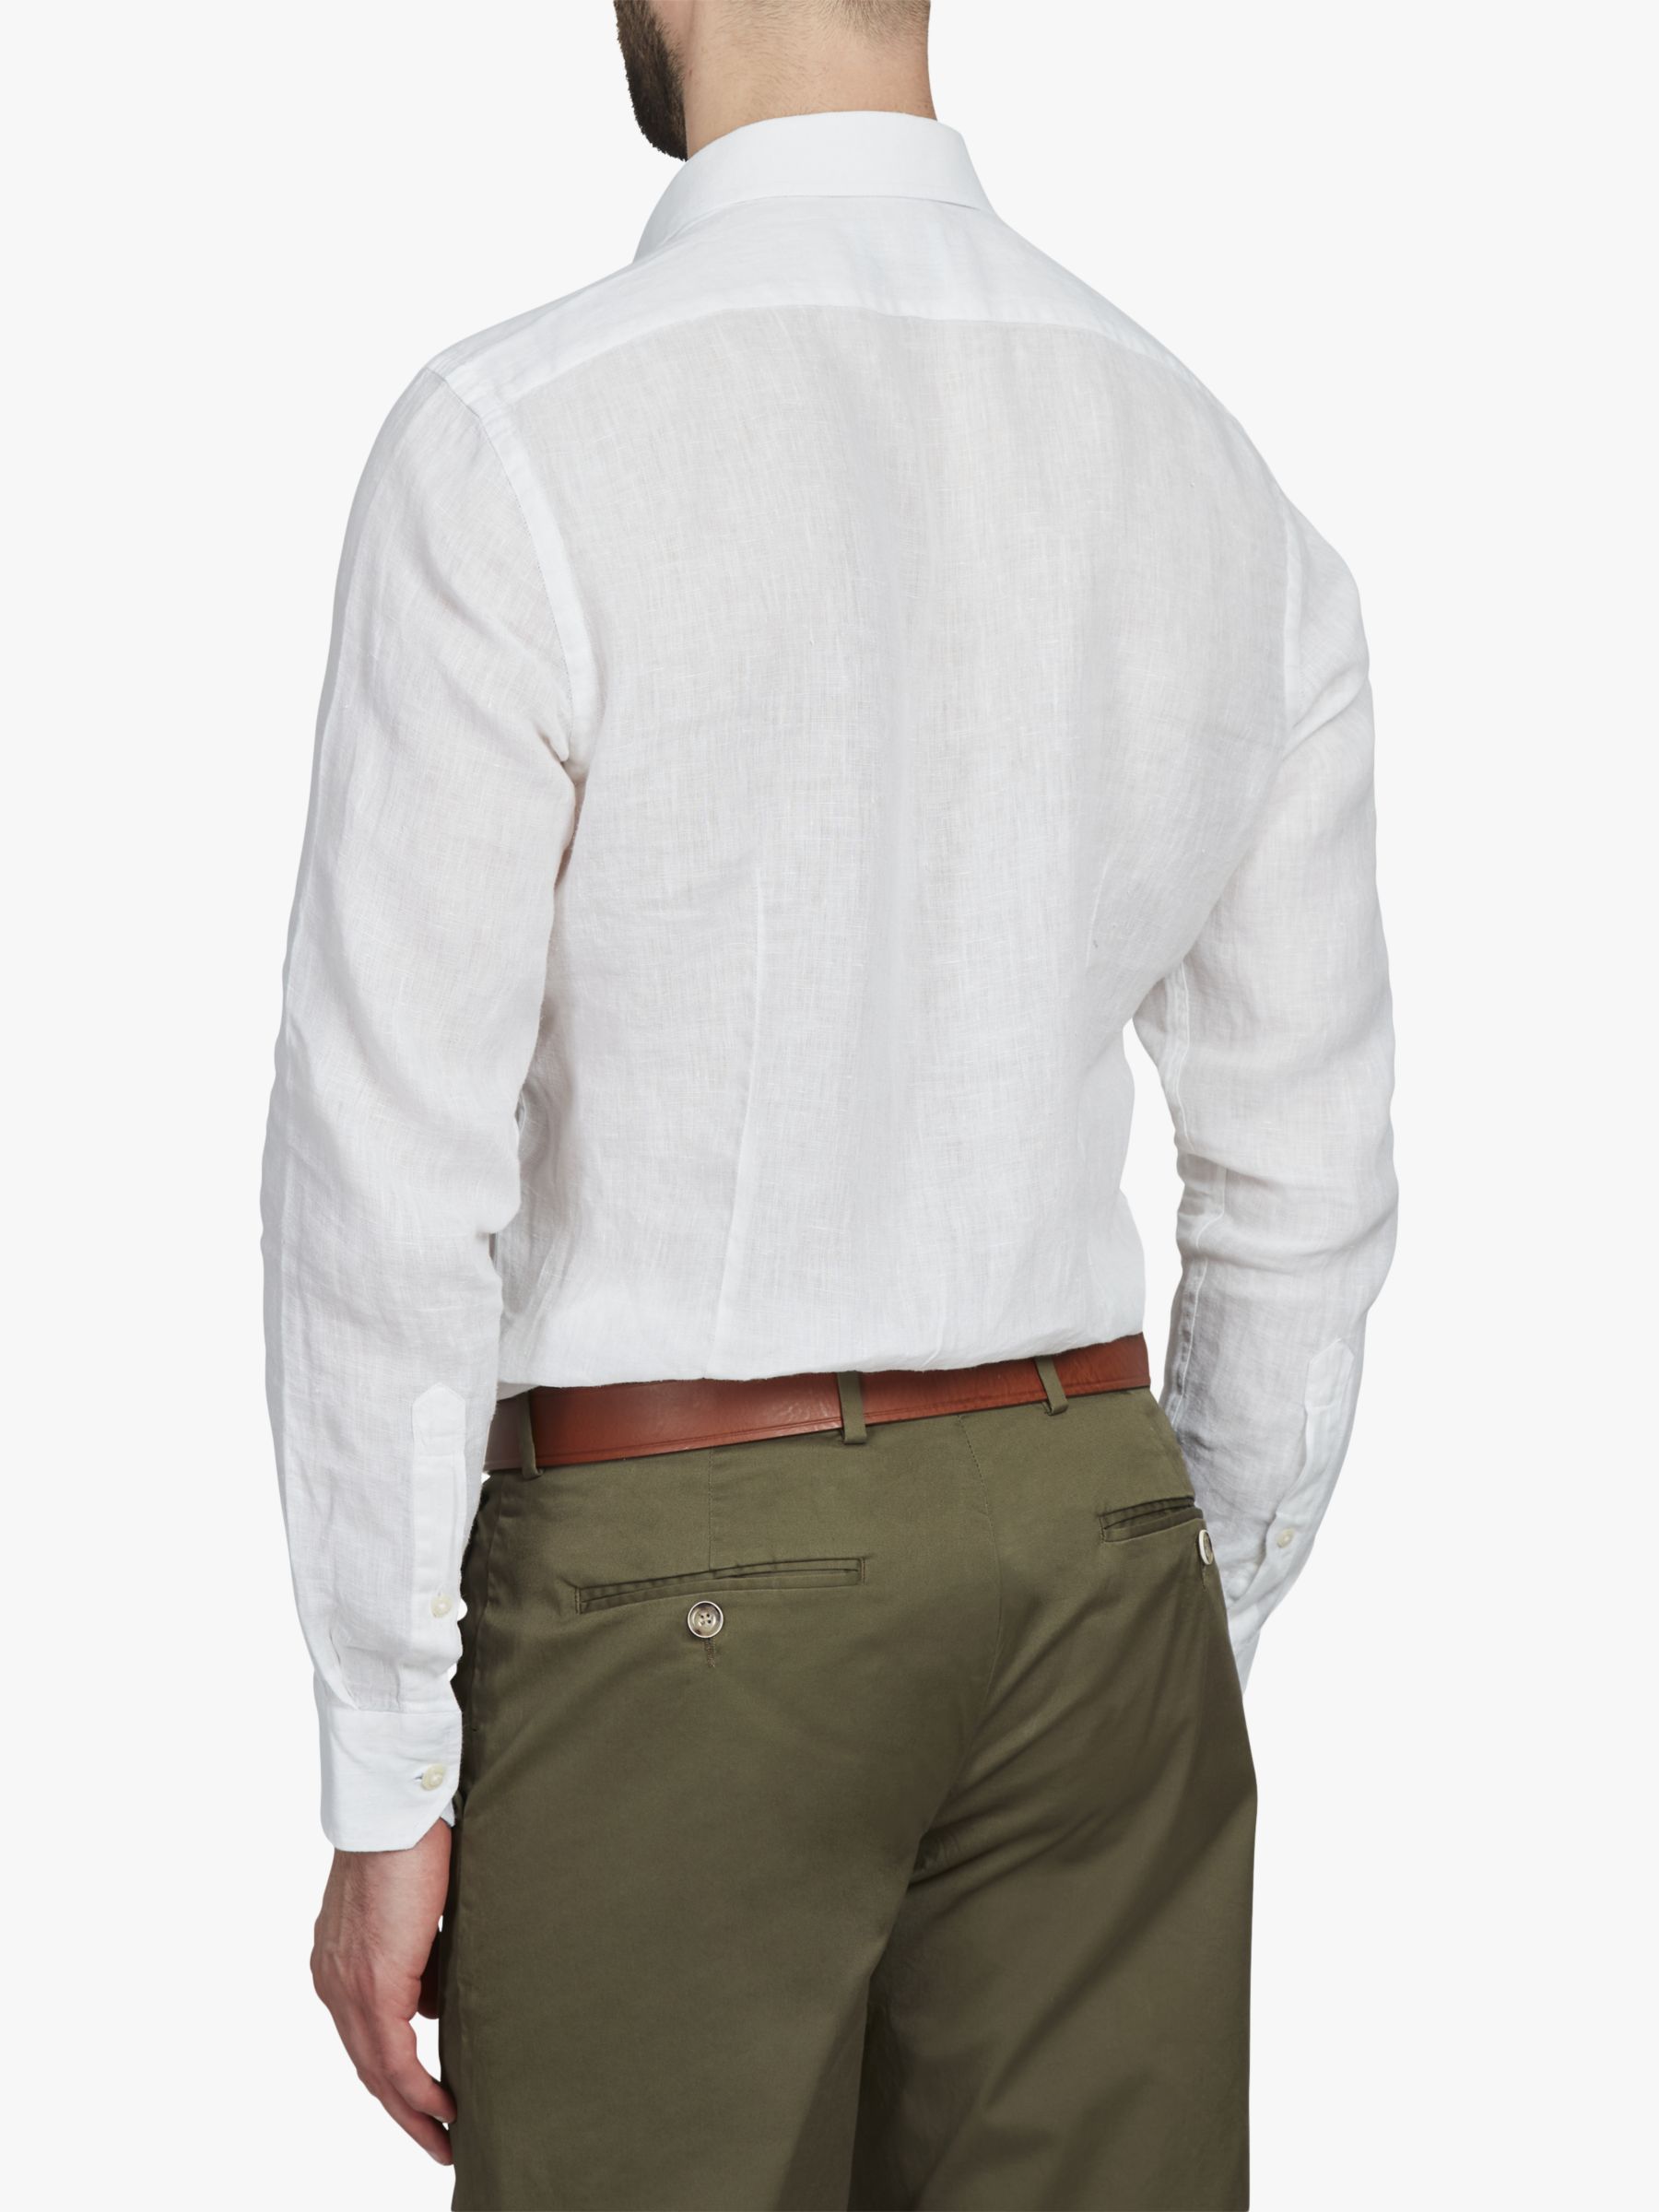 Buy Simon Carter Linen Long Sleeve Shirt, White Online at johnlewis.com